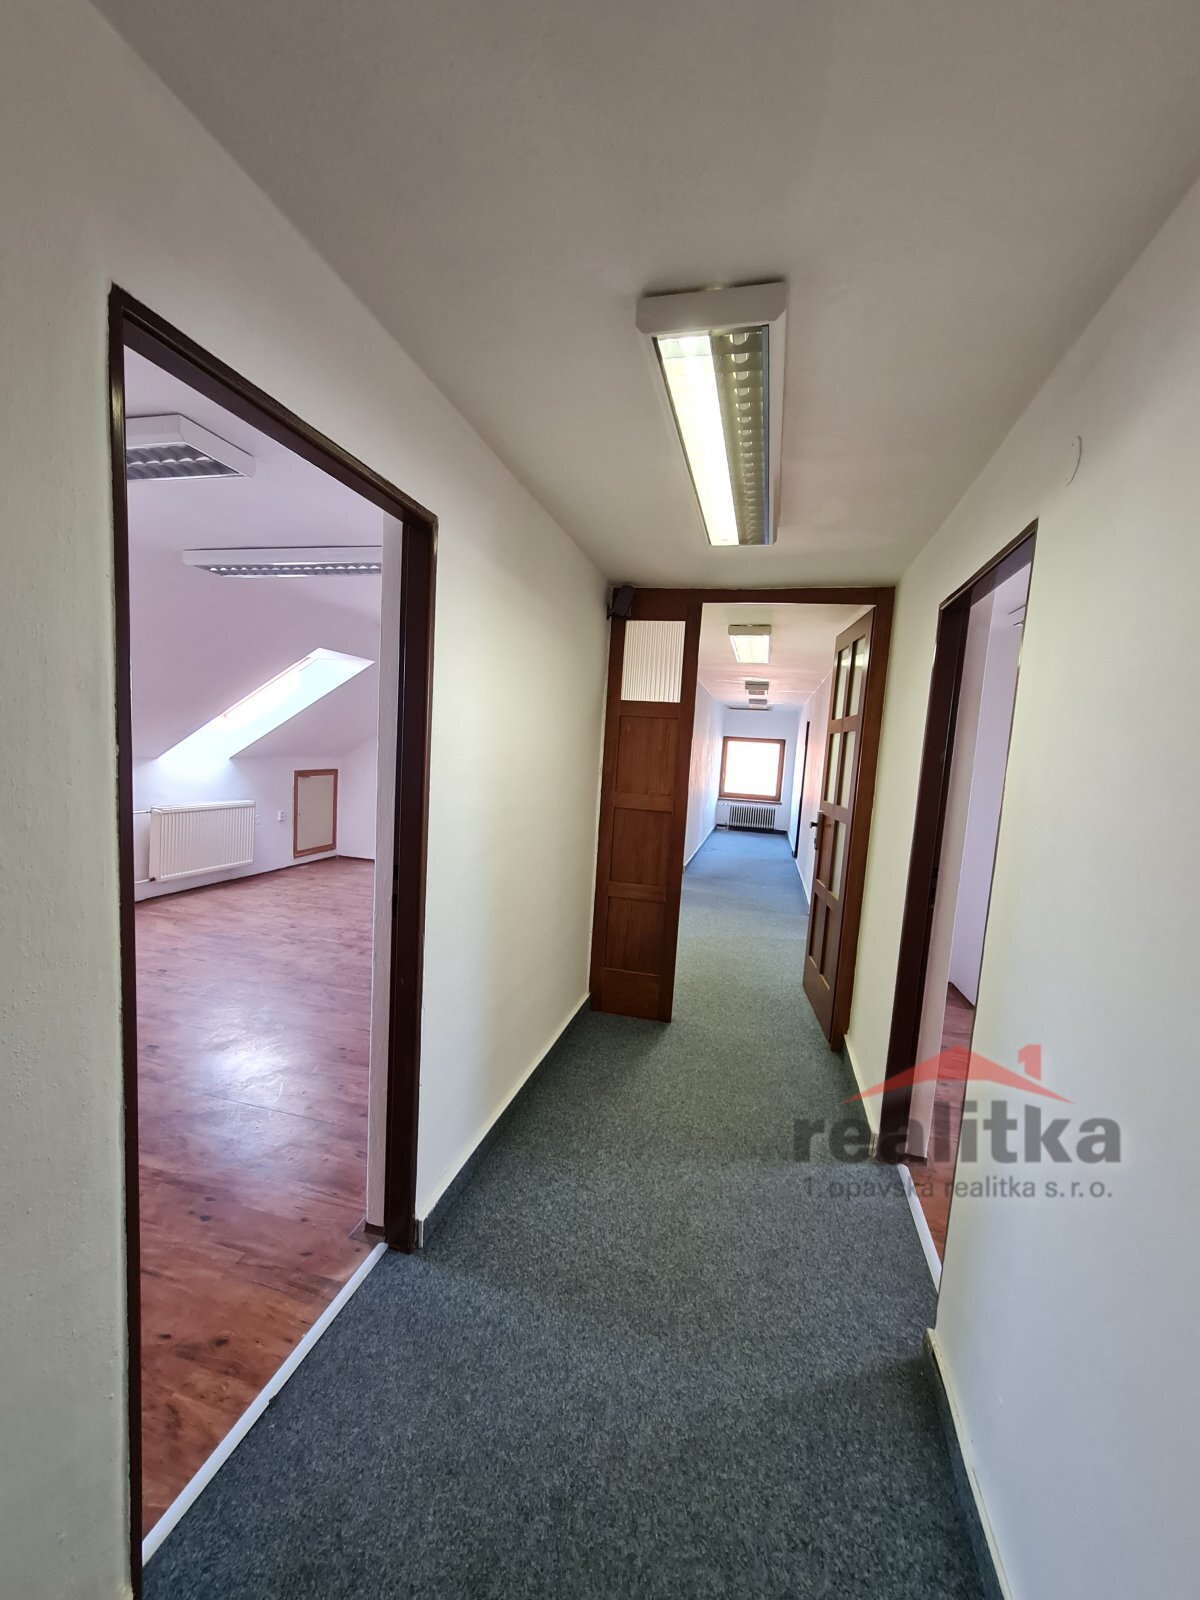 Pronájem kanceláře, 113 m² Opava, Kateřinky, U Cukrovaru, obrázek 4